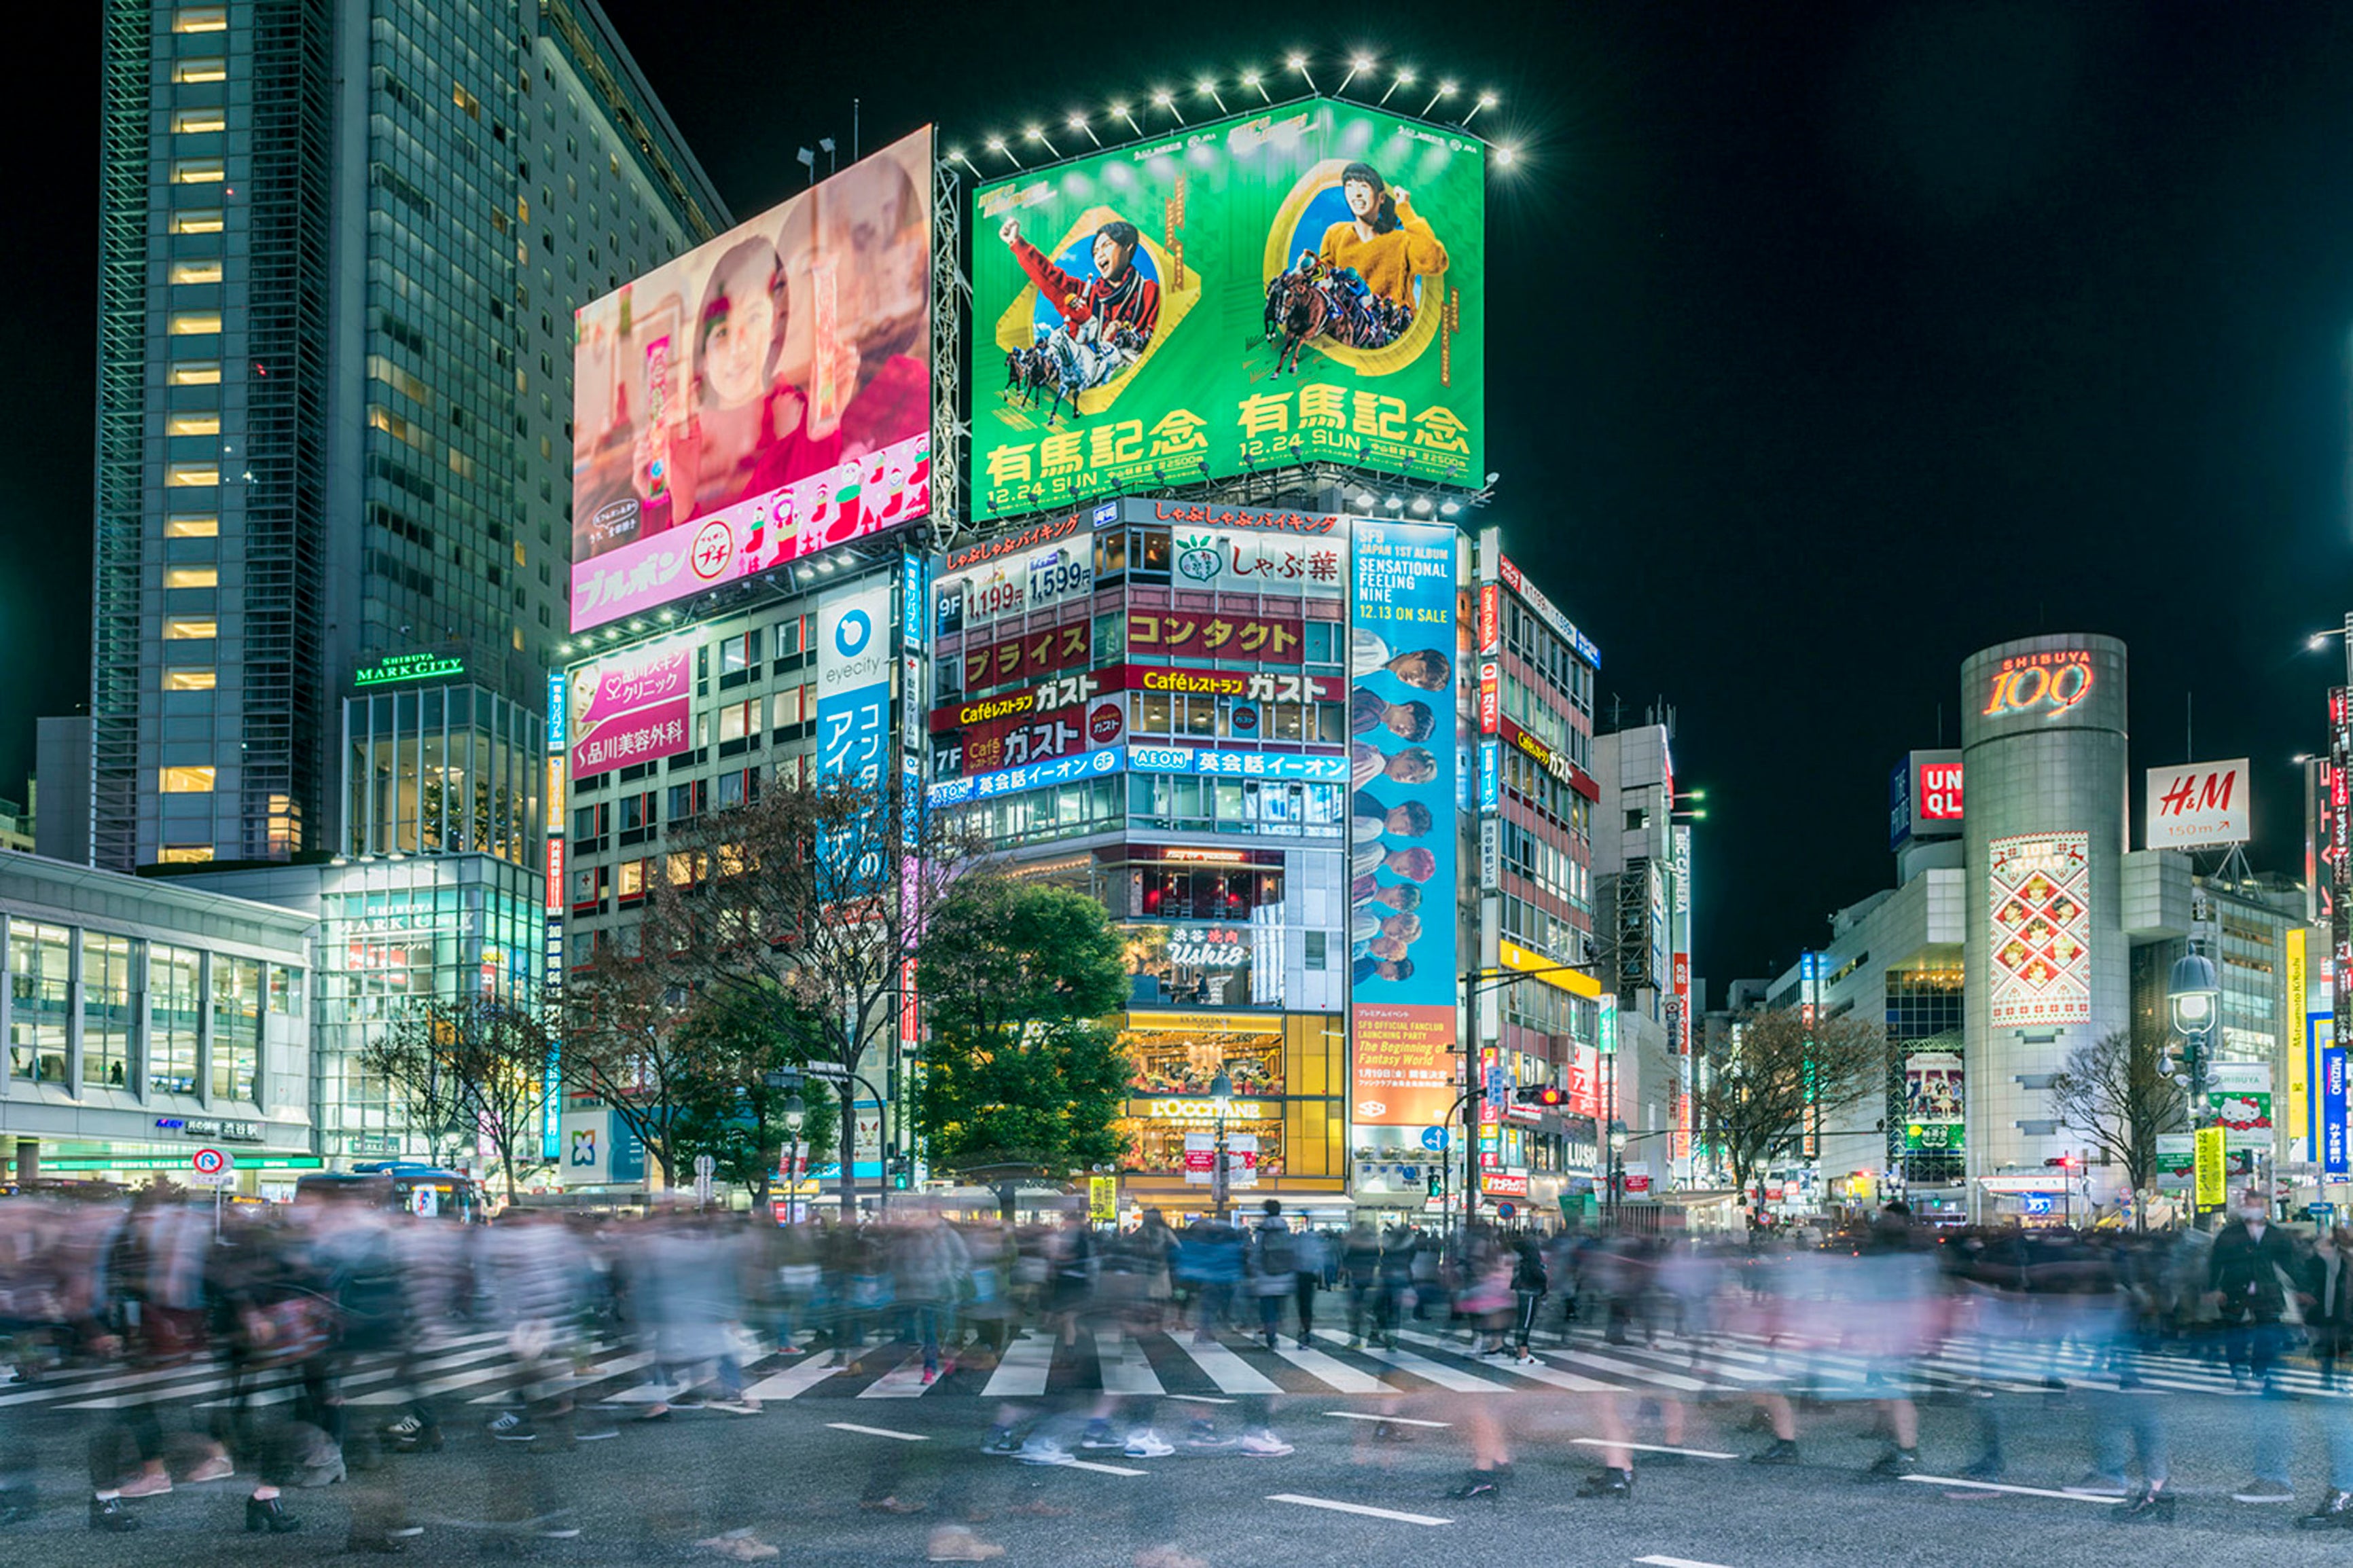 Shibuya Crossing In Tokyo Japan At Night Richard Silver Photo